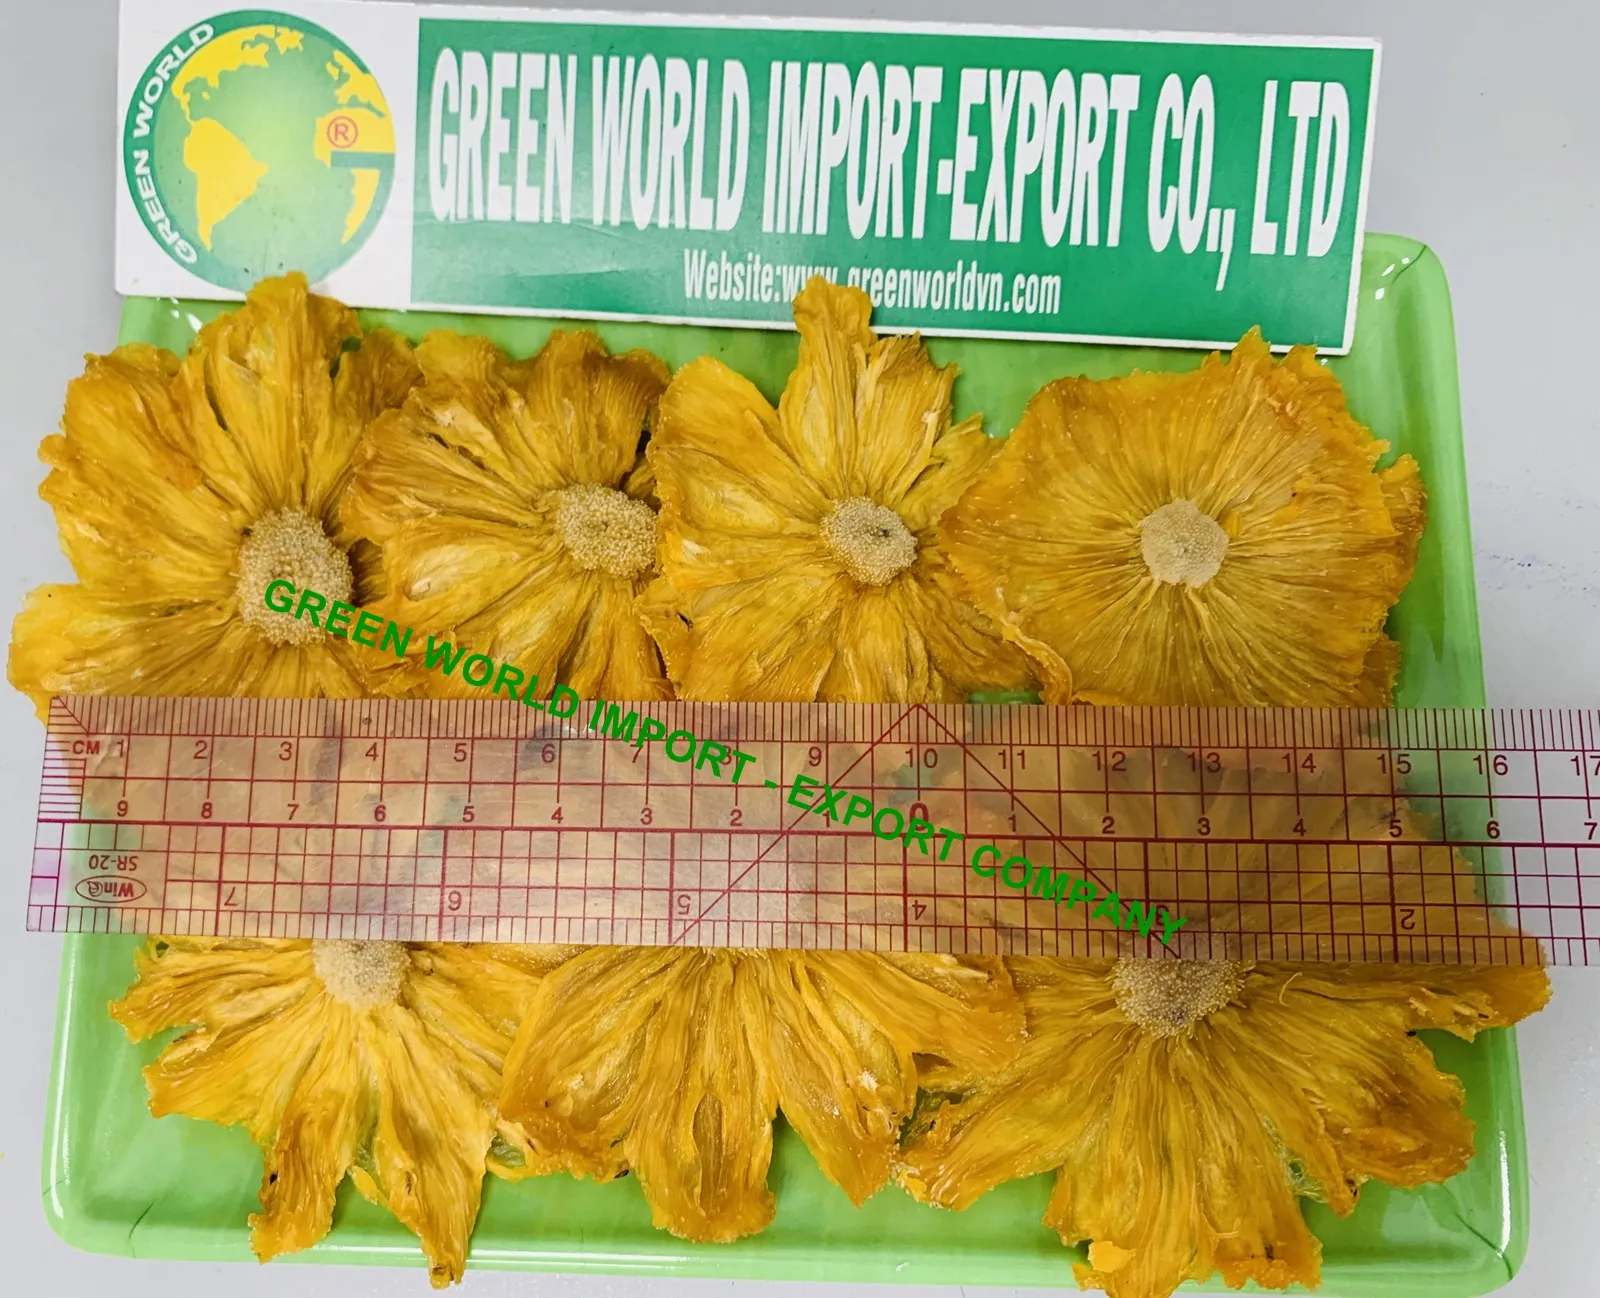 Ananas essiccato morbido naturale-spuntino di frutta gommosa essiccata sana-ananas secco con un prezzo competitivo dal VIETNAM